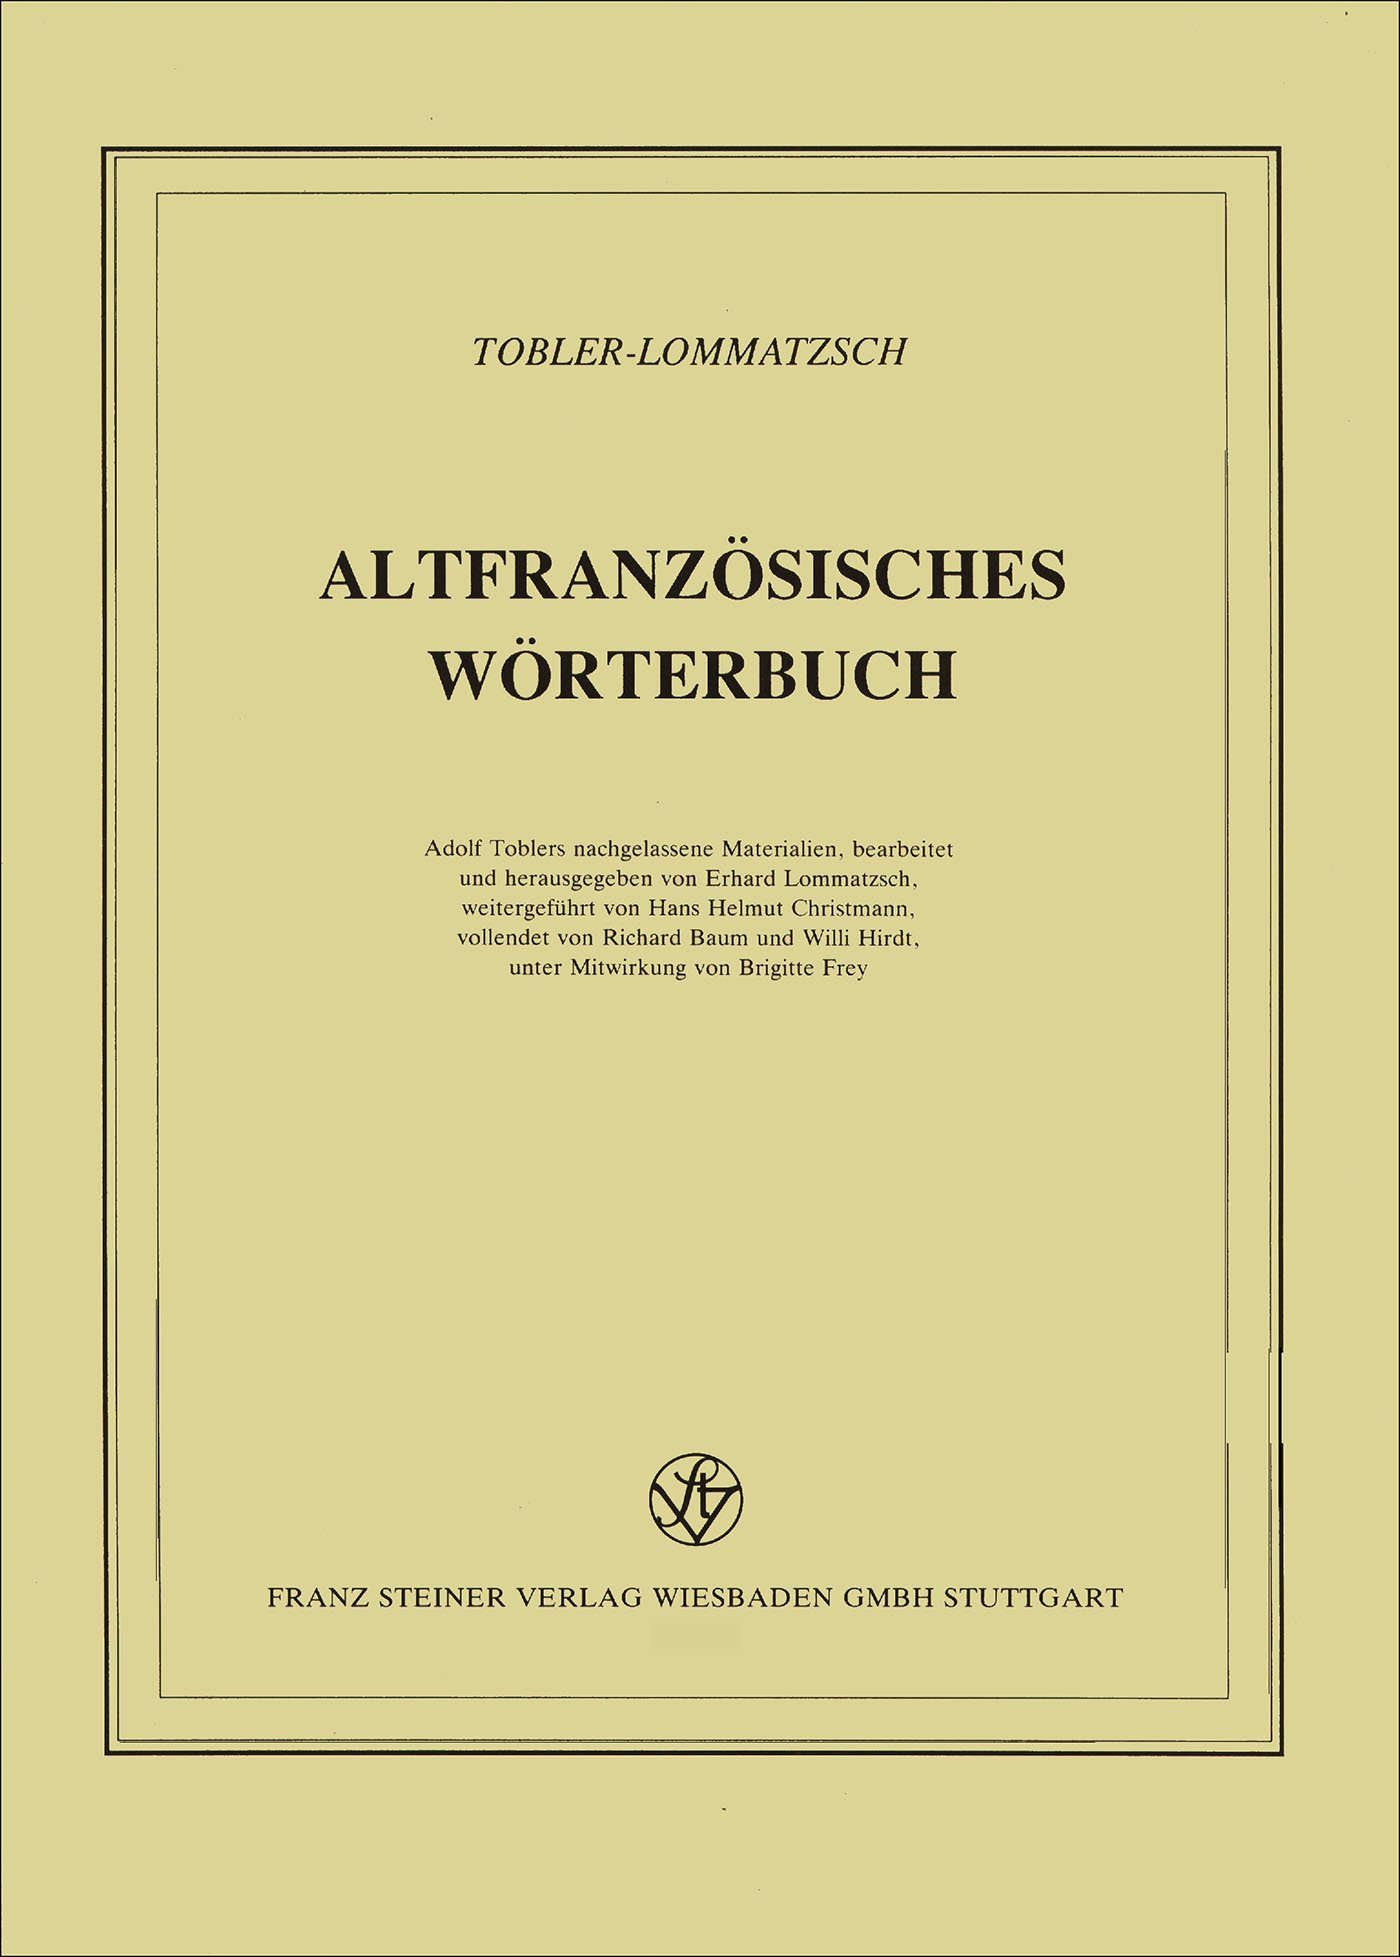 Altfranzösisches Wörterbuch. Band 12. Lieferung 93